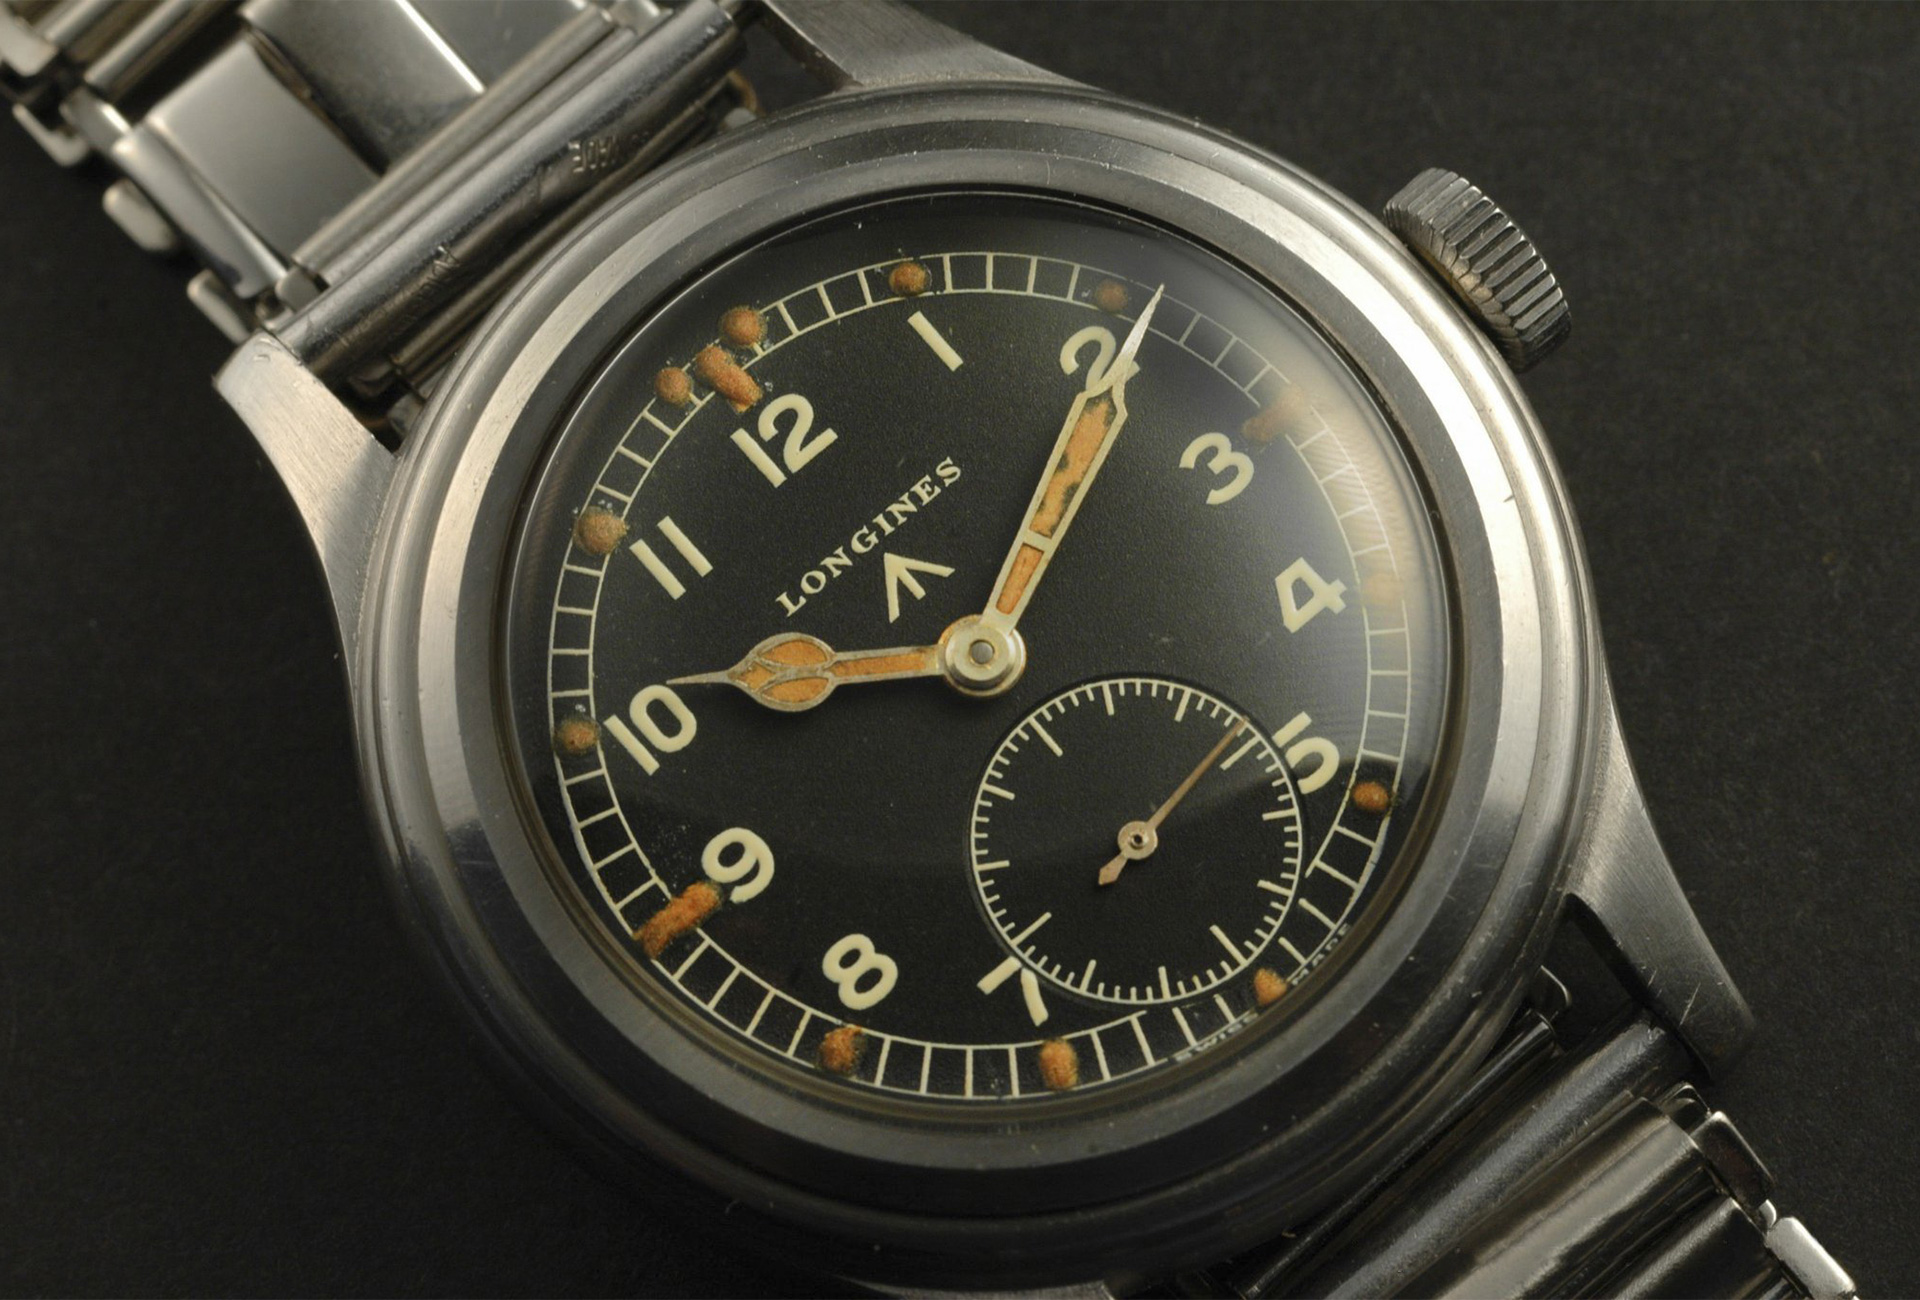 omega world war 2 watches